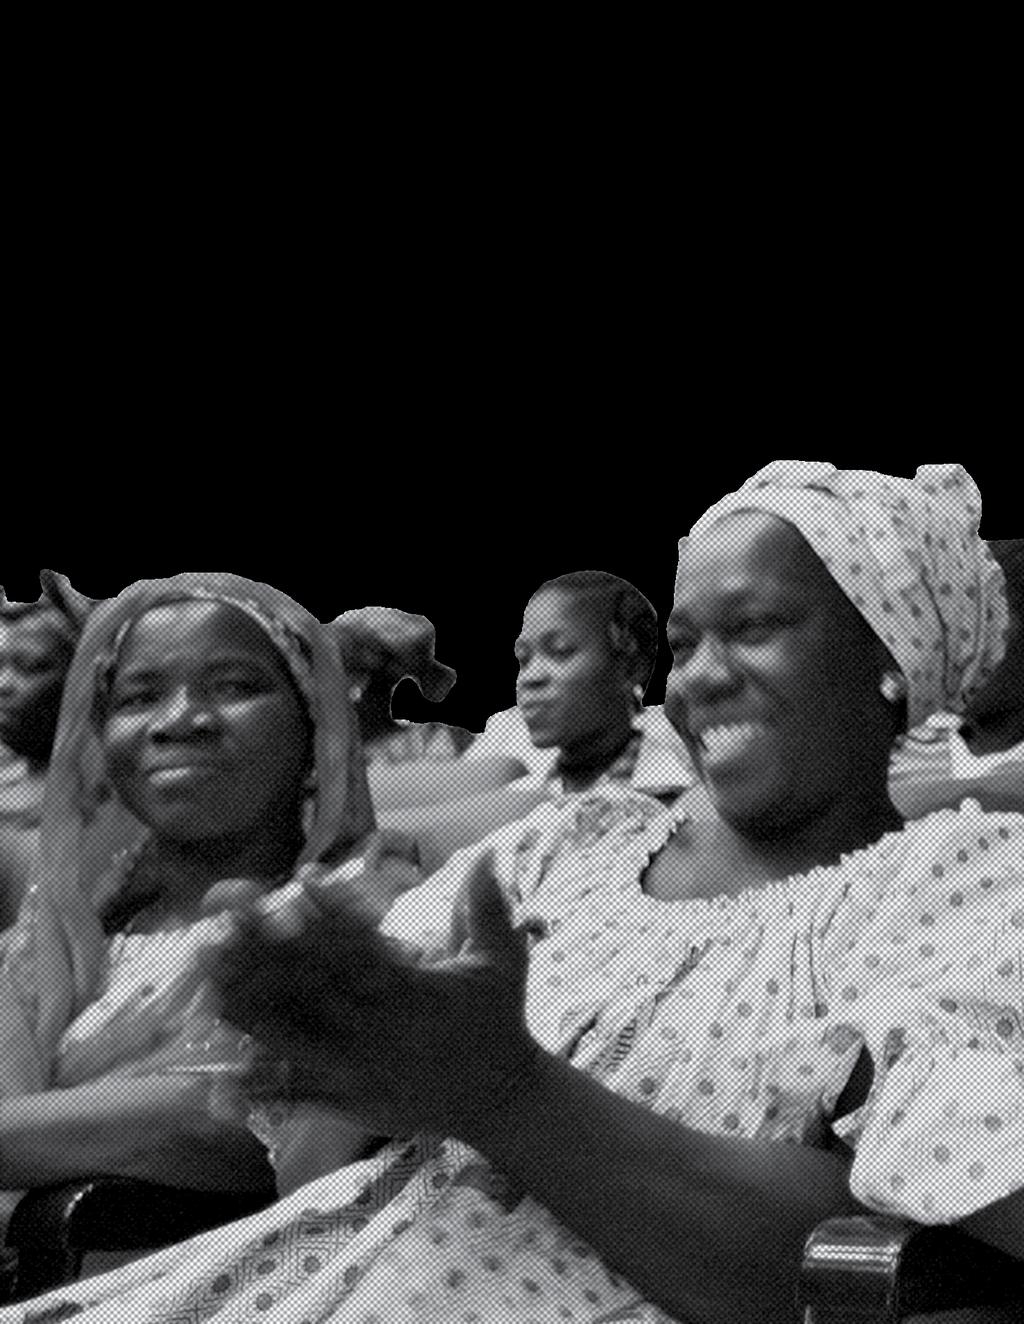 Gratë anembanë Bregut të Fildishtë mblidhen për të